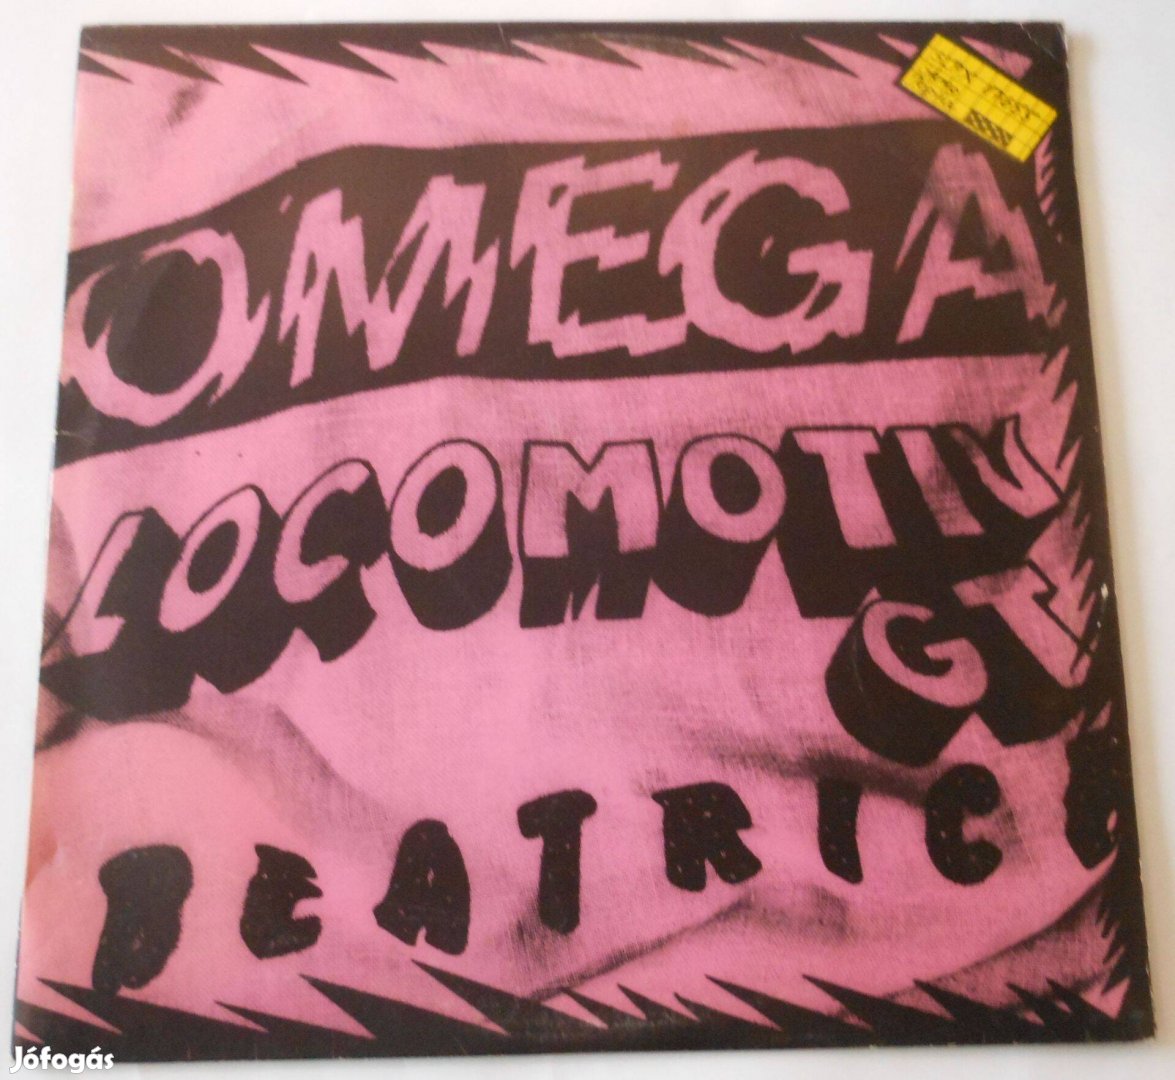 Omega - LGT - Beatrice koncert LP